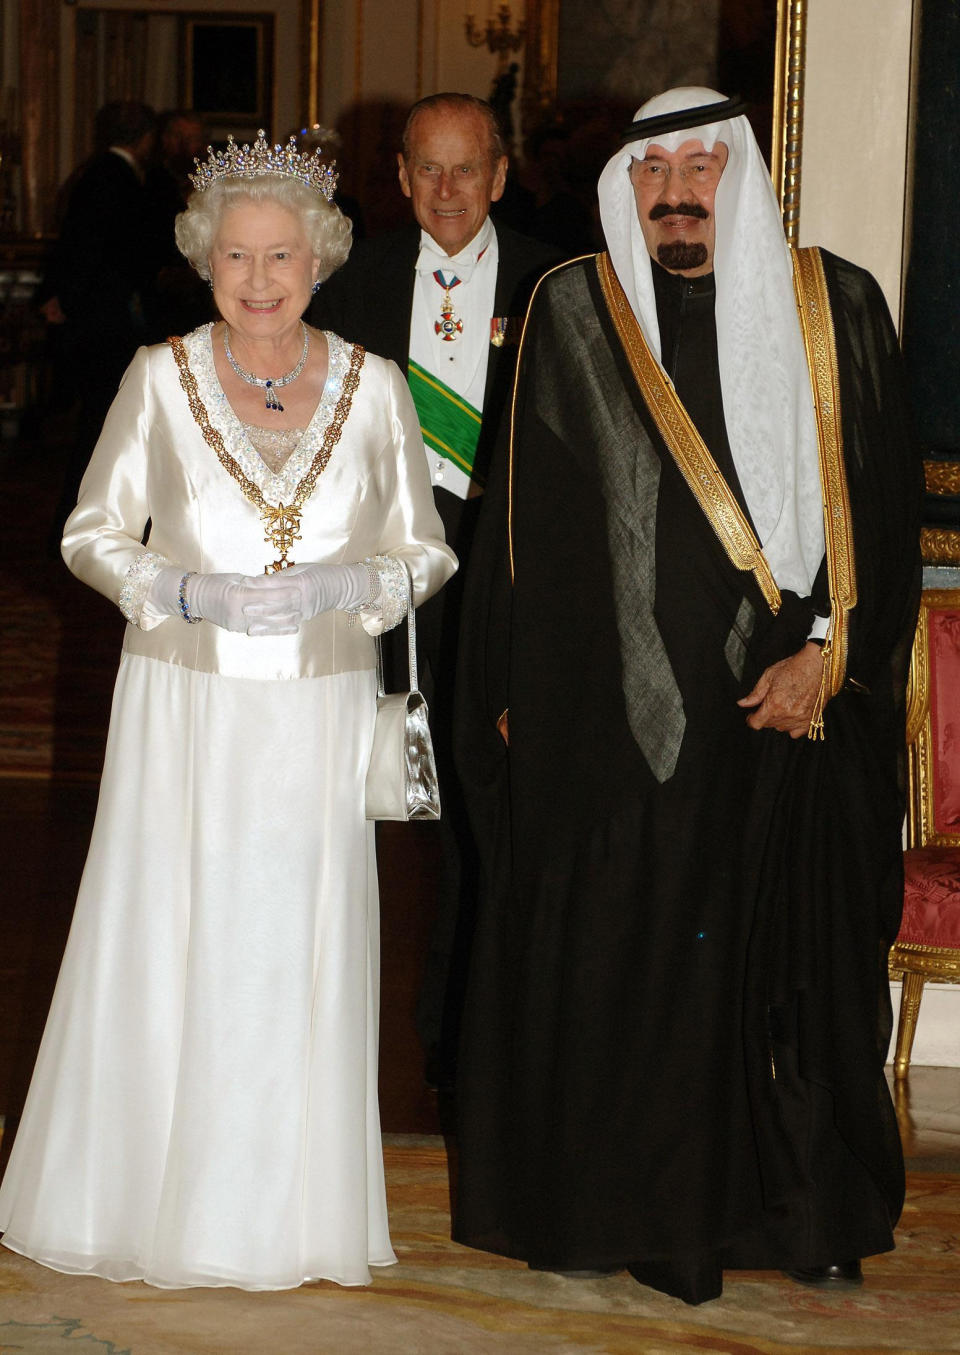 Una fotografía de grupo del rey Abdullah de Arabia Saudita (a la derecha) con la reina Isabel II (a la izquierda) y el duque de Edimburgo (en el centro) antes del banquete de Estado en el Palacio de Buckingham en Londres, después del primer día de la visita de los reyes saudíes. (Foto de John Stillwell - PA Images/PA Images vía Getty Images)